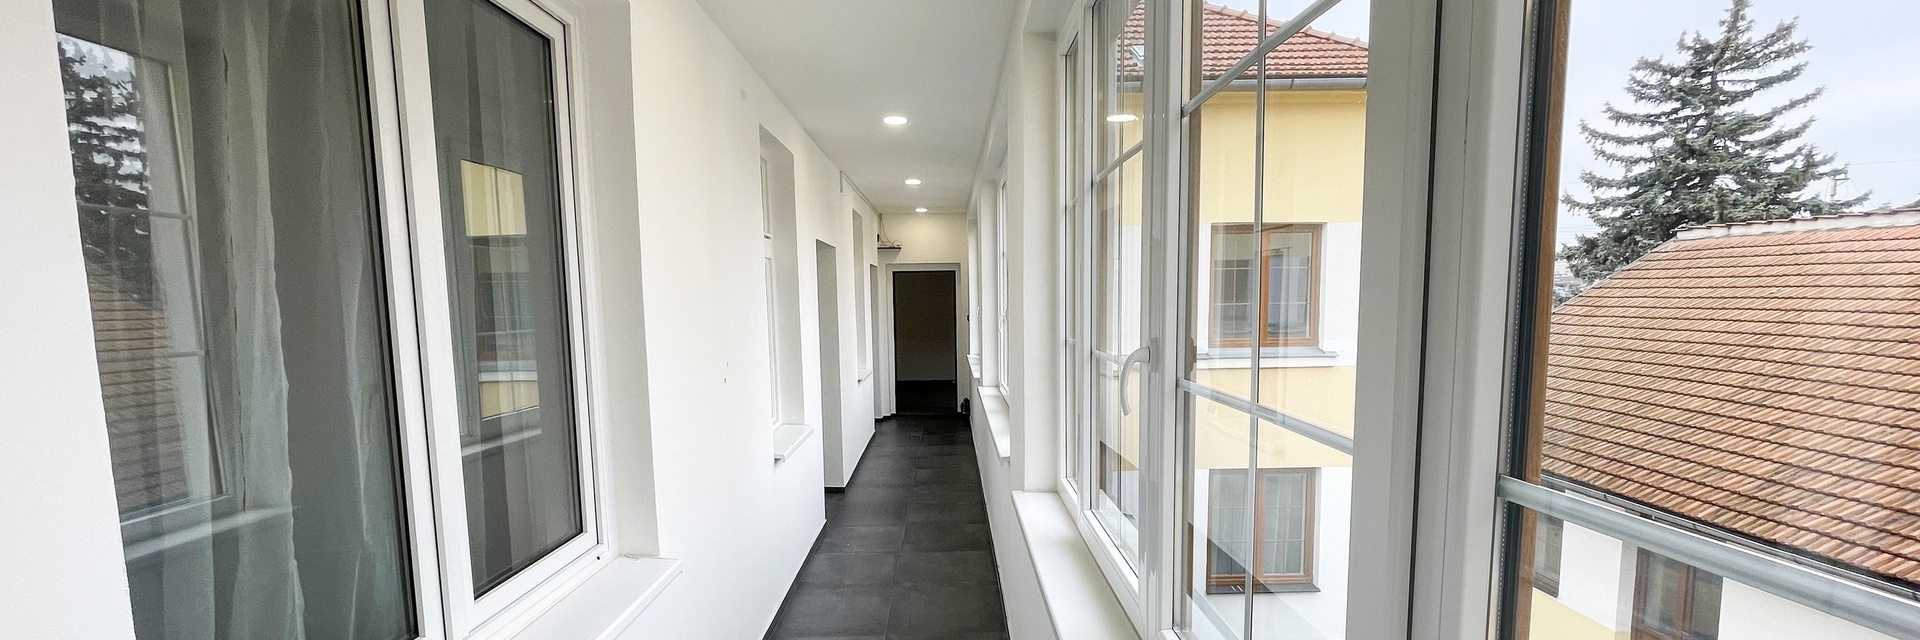 Pronájem kancelářských prostor 208 m² , ulice Hradilova, Brno - Židenice